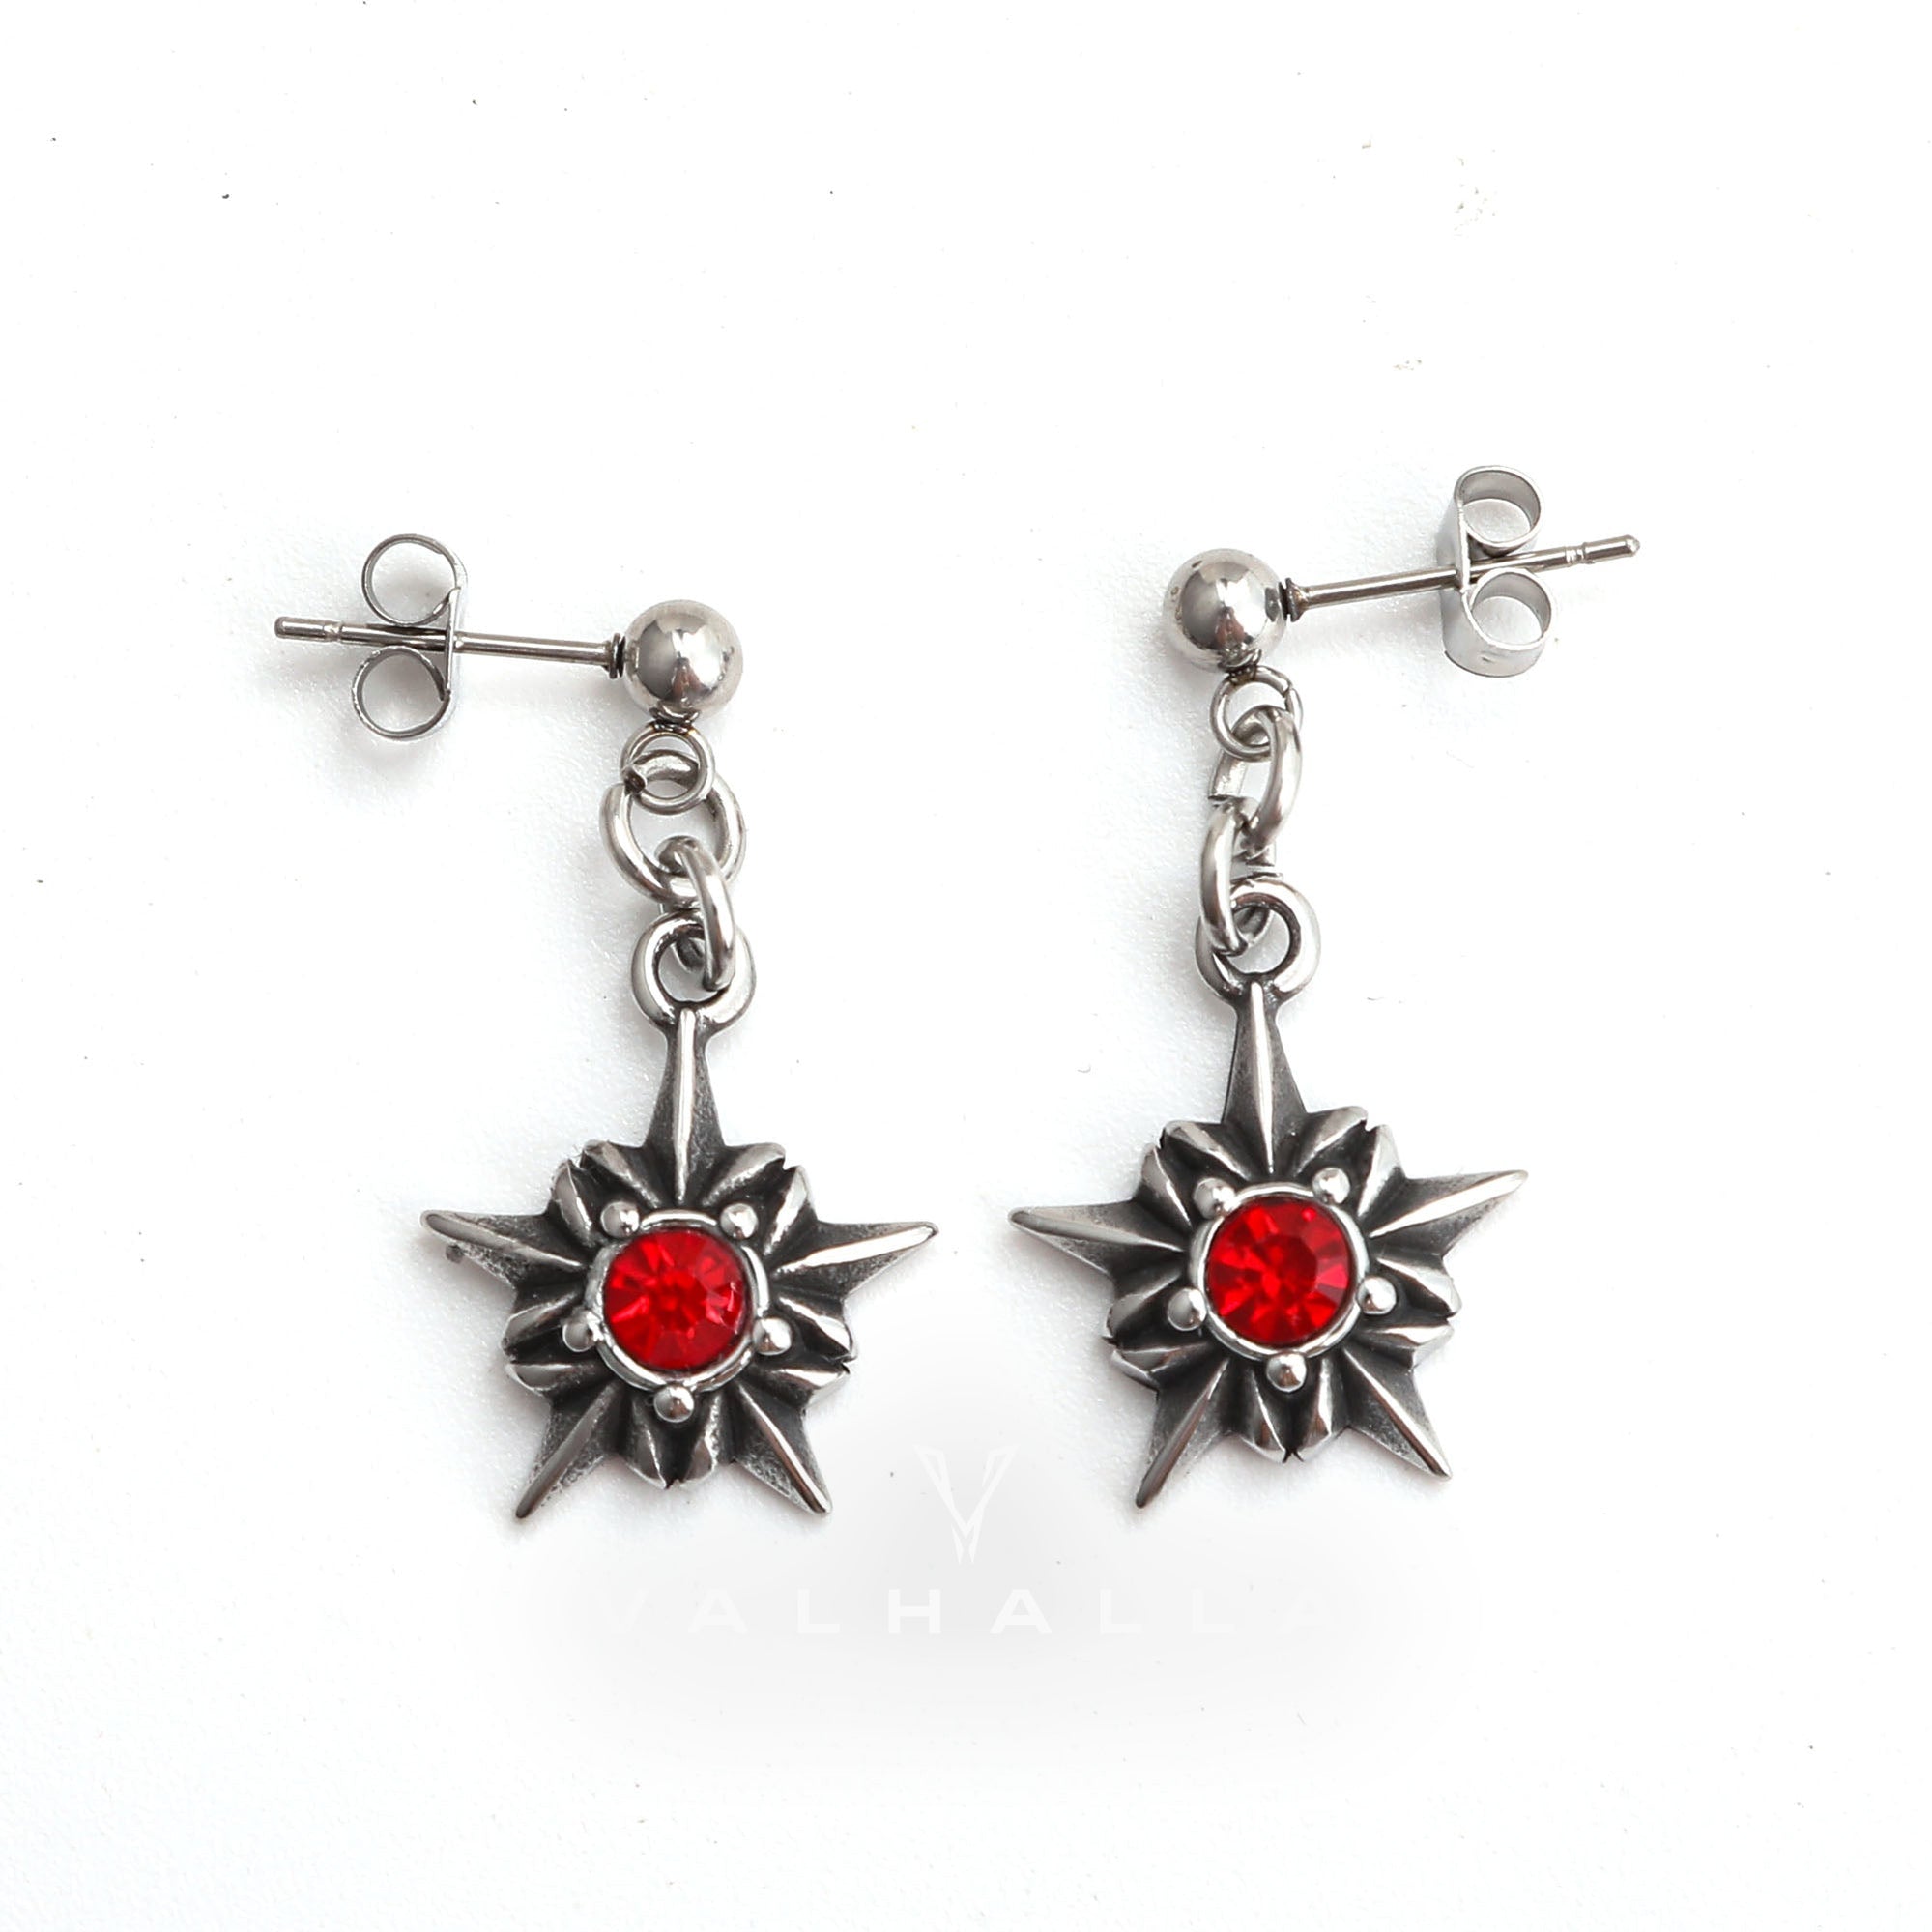 Pentagram Red Gemstone Stainless Steel Stud Earrings